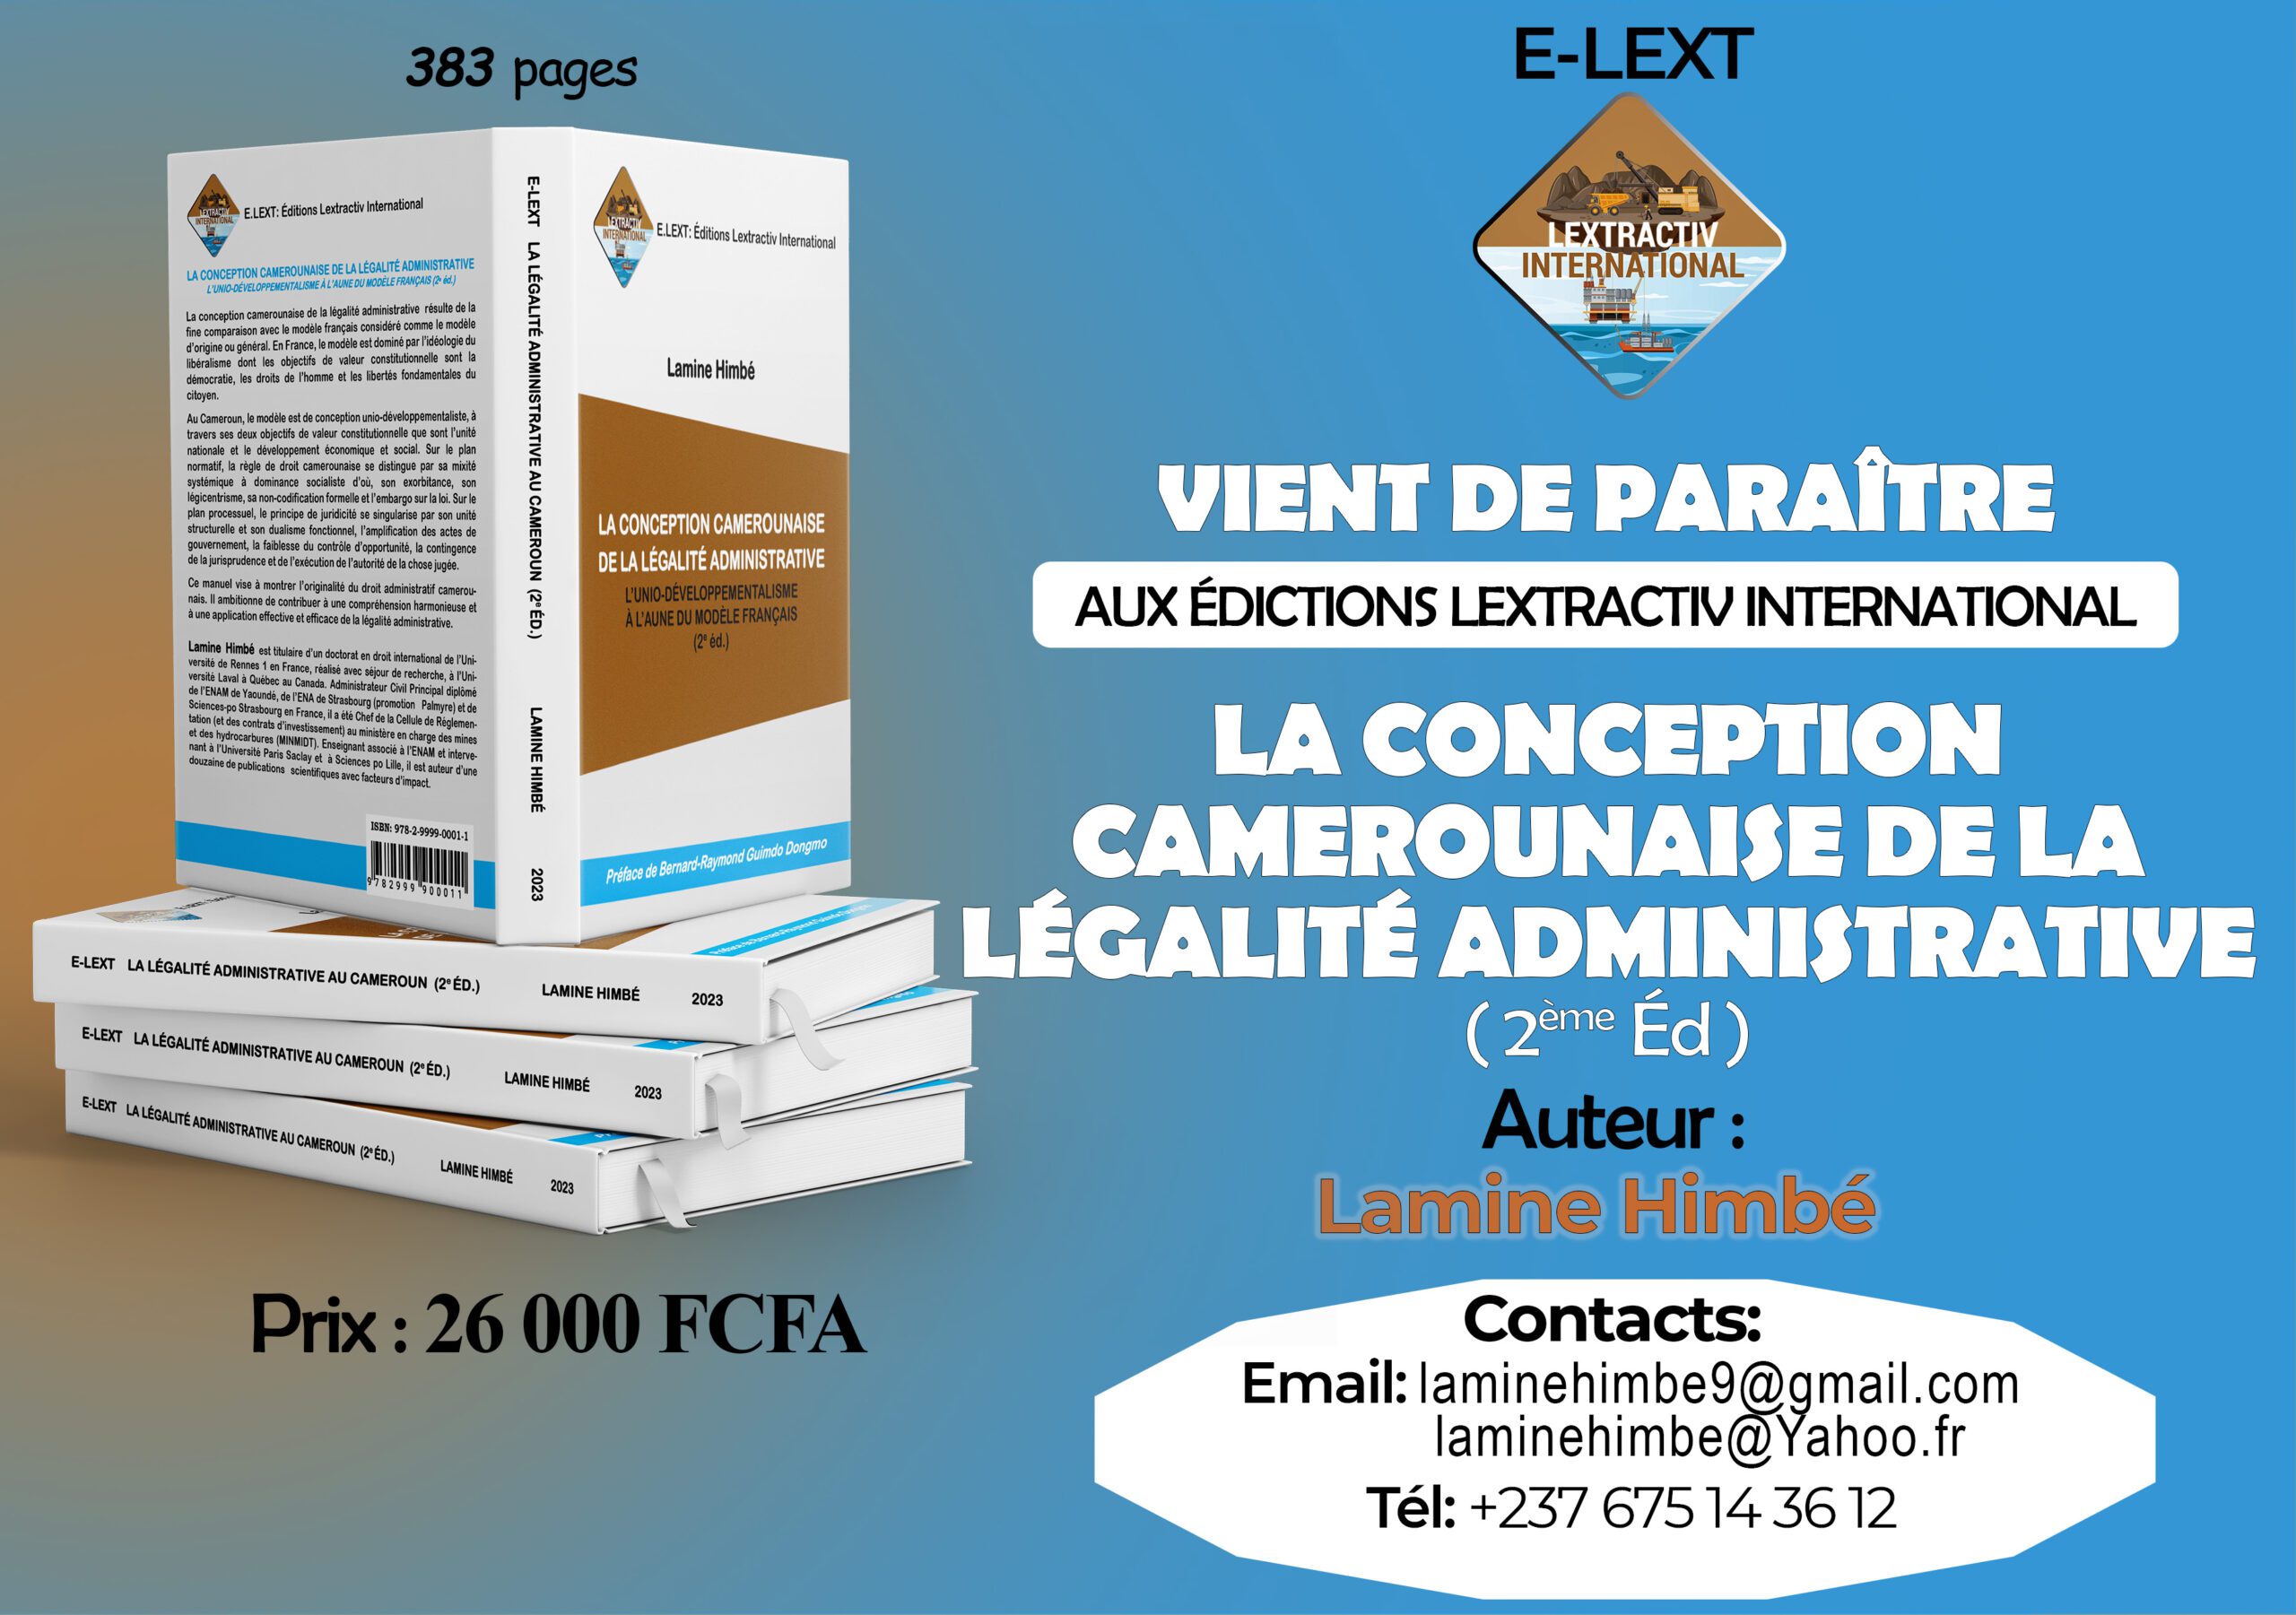 La conception camerounaise de la légalité administrative…